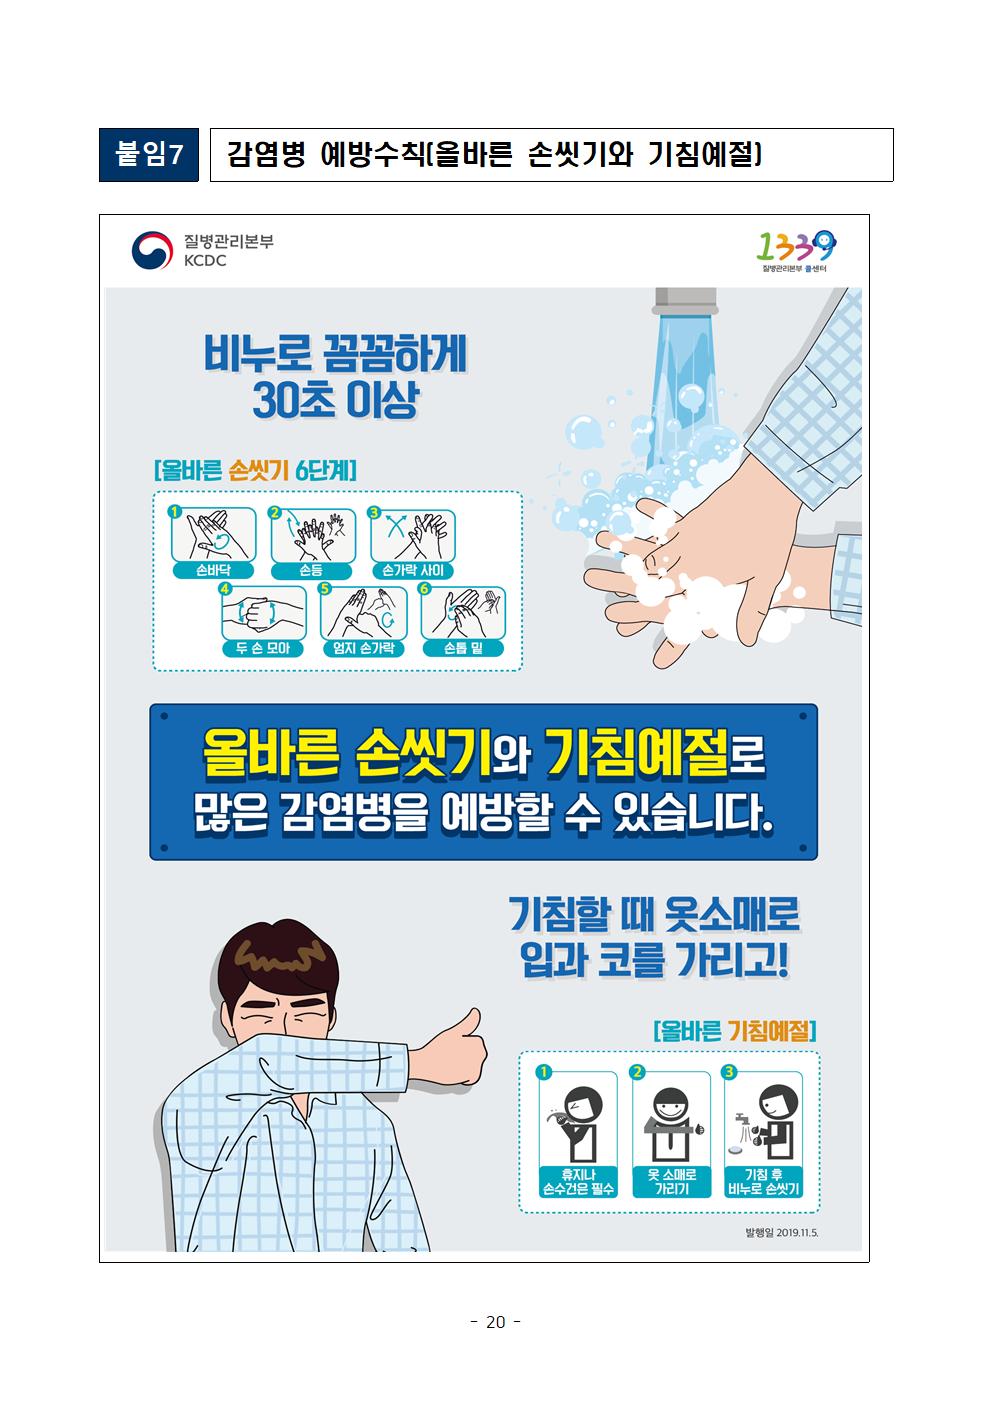 2021학년도 학교별 입학전형 안전관리 계획_한국게임과학고(홈페이지게시)022